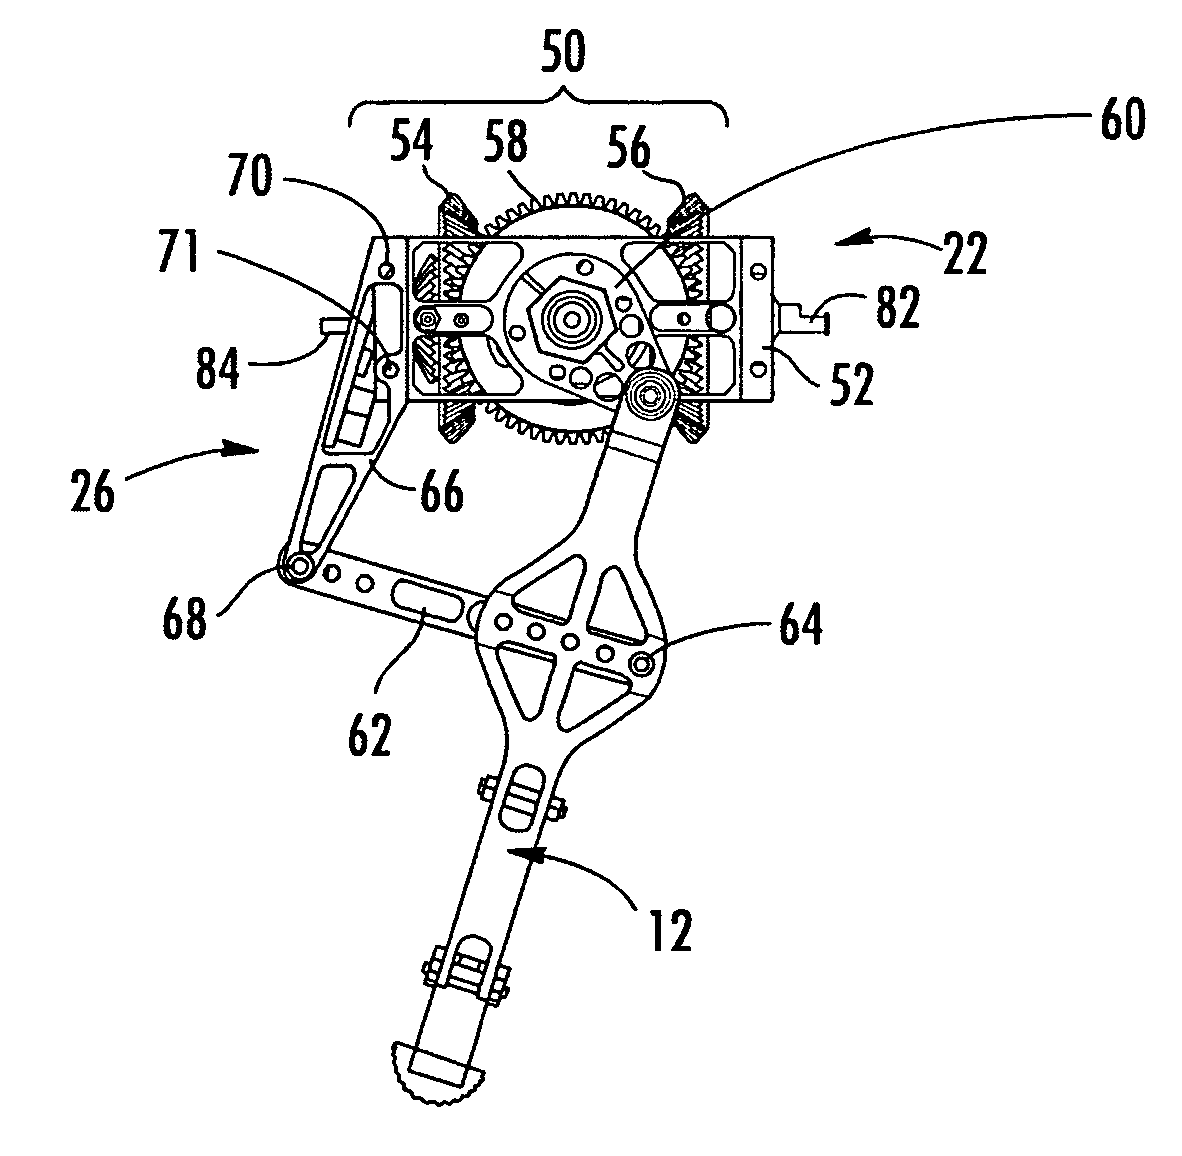 Robot and robot leg mechanism